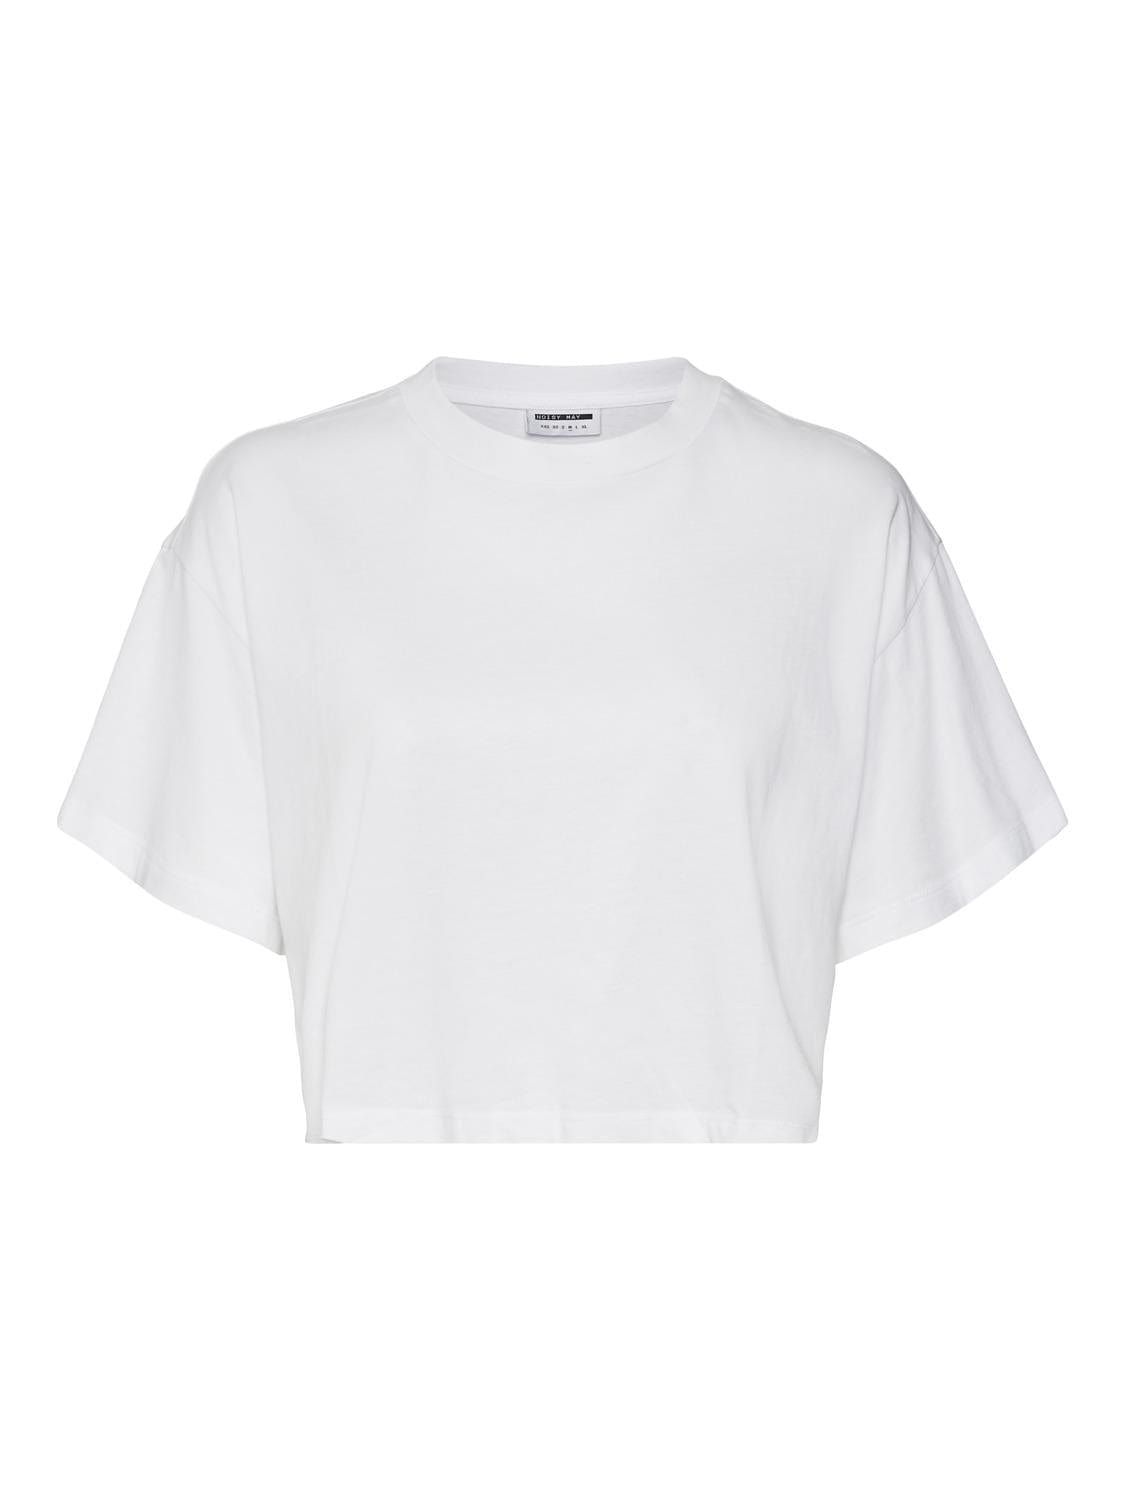 Se Hvid Crop T-shirt - Malena Hvid - Noisy May hos stilkompagniet.dk